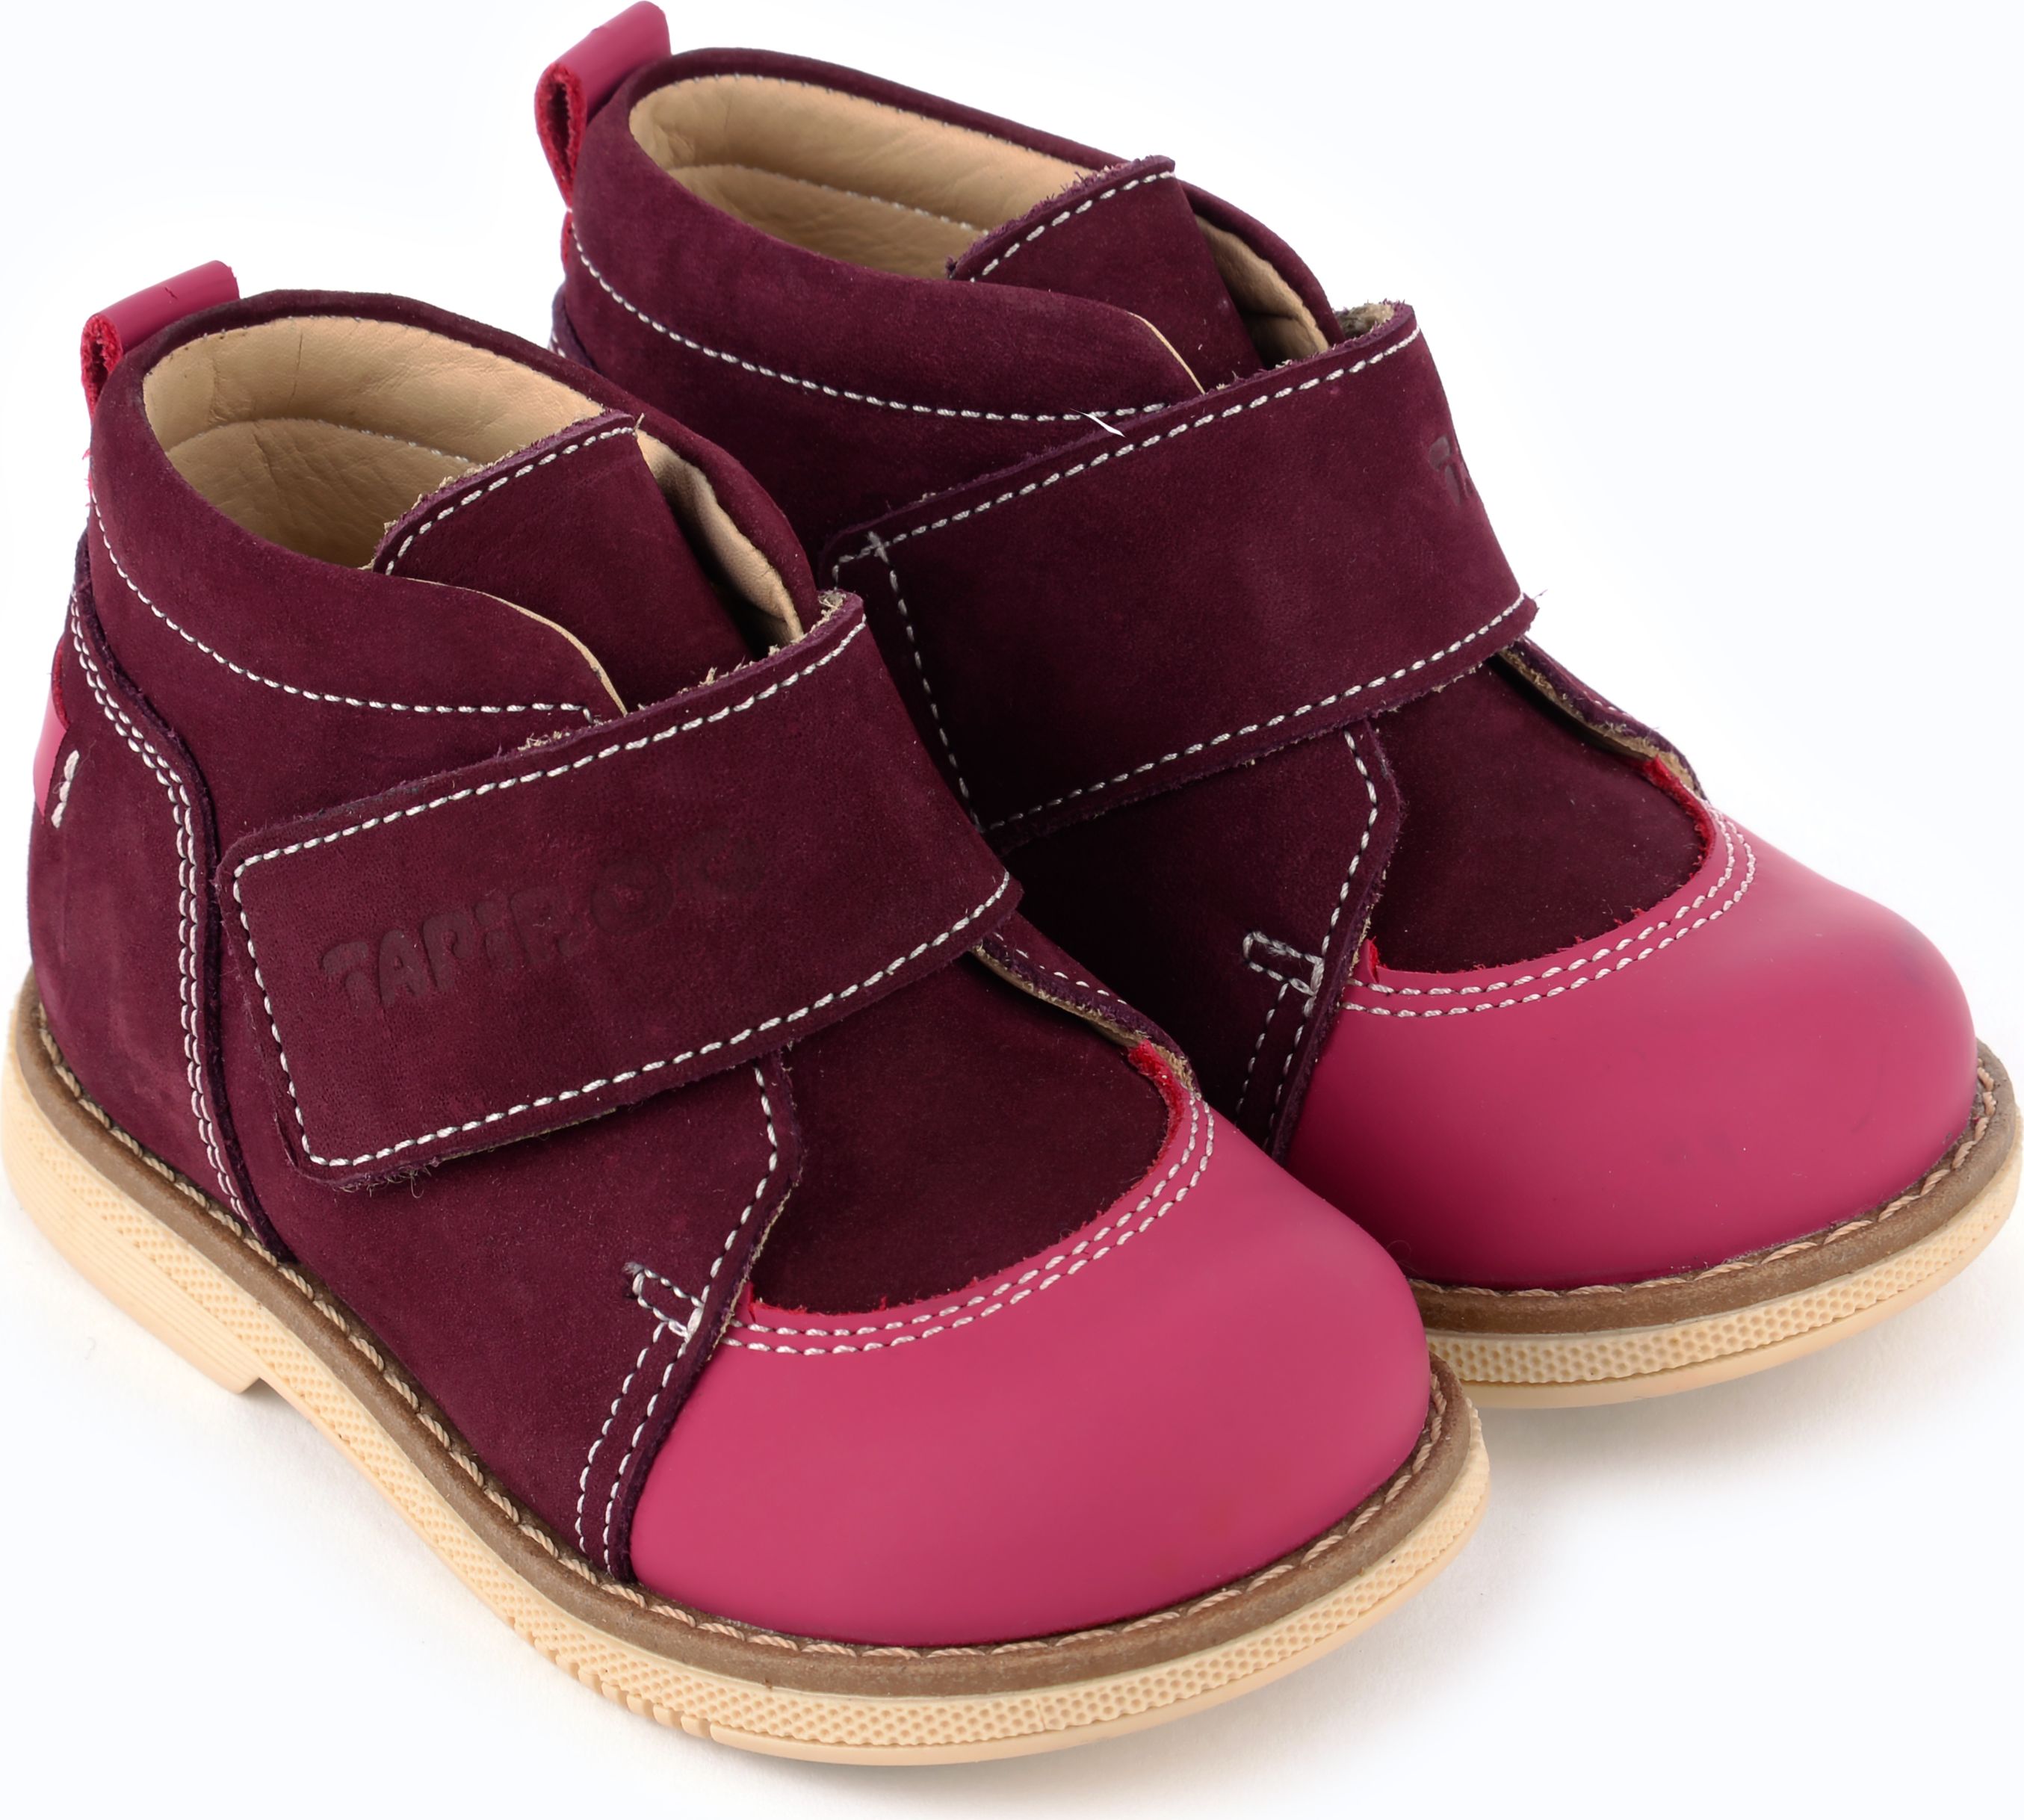 Ботинки для девочки Tapiboo Мак, цвет: бордовый. FT-24015.18-OL06O.01. Размер 18